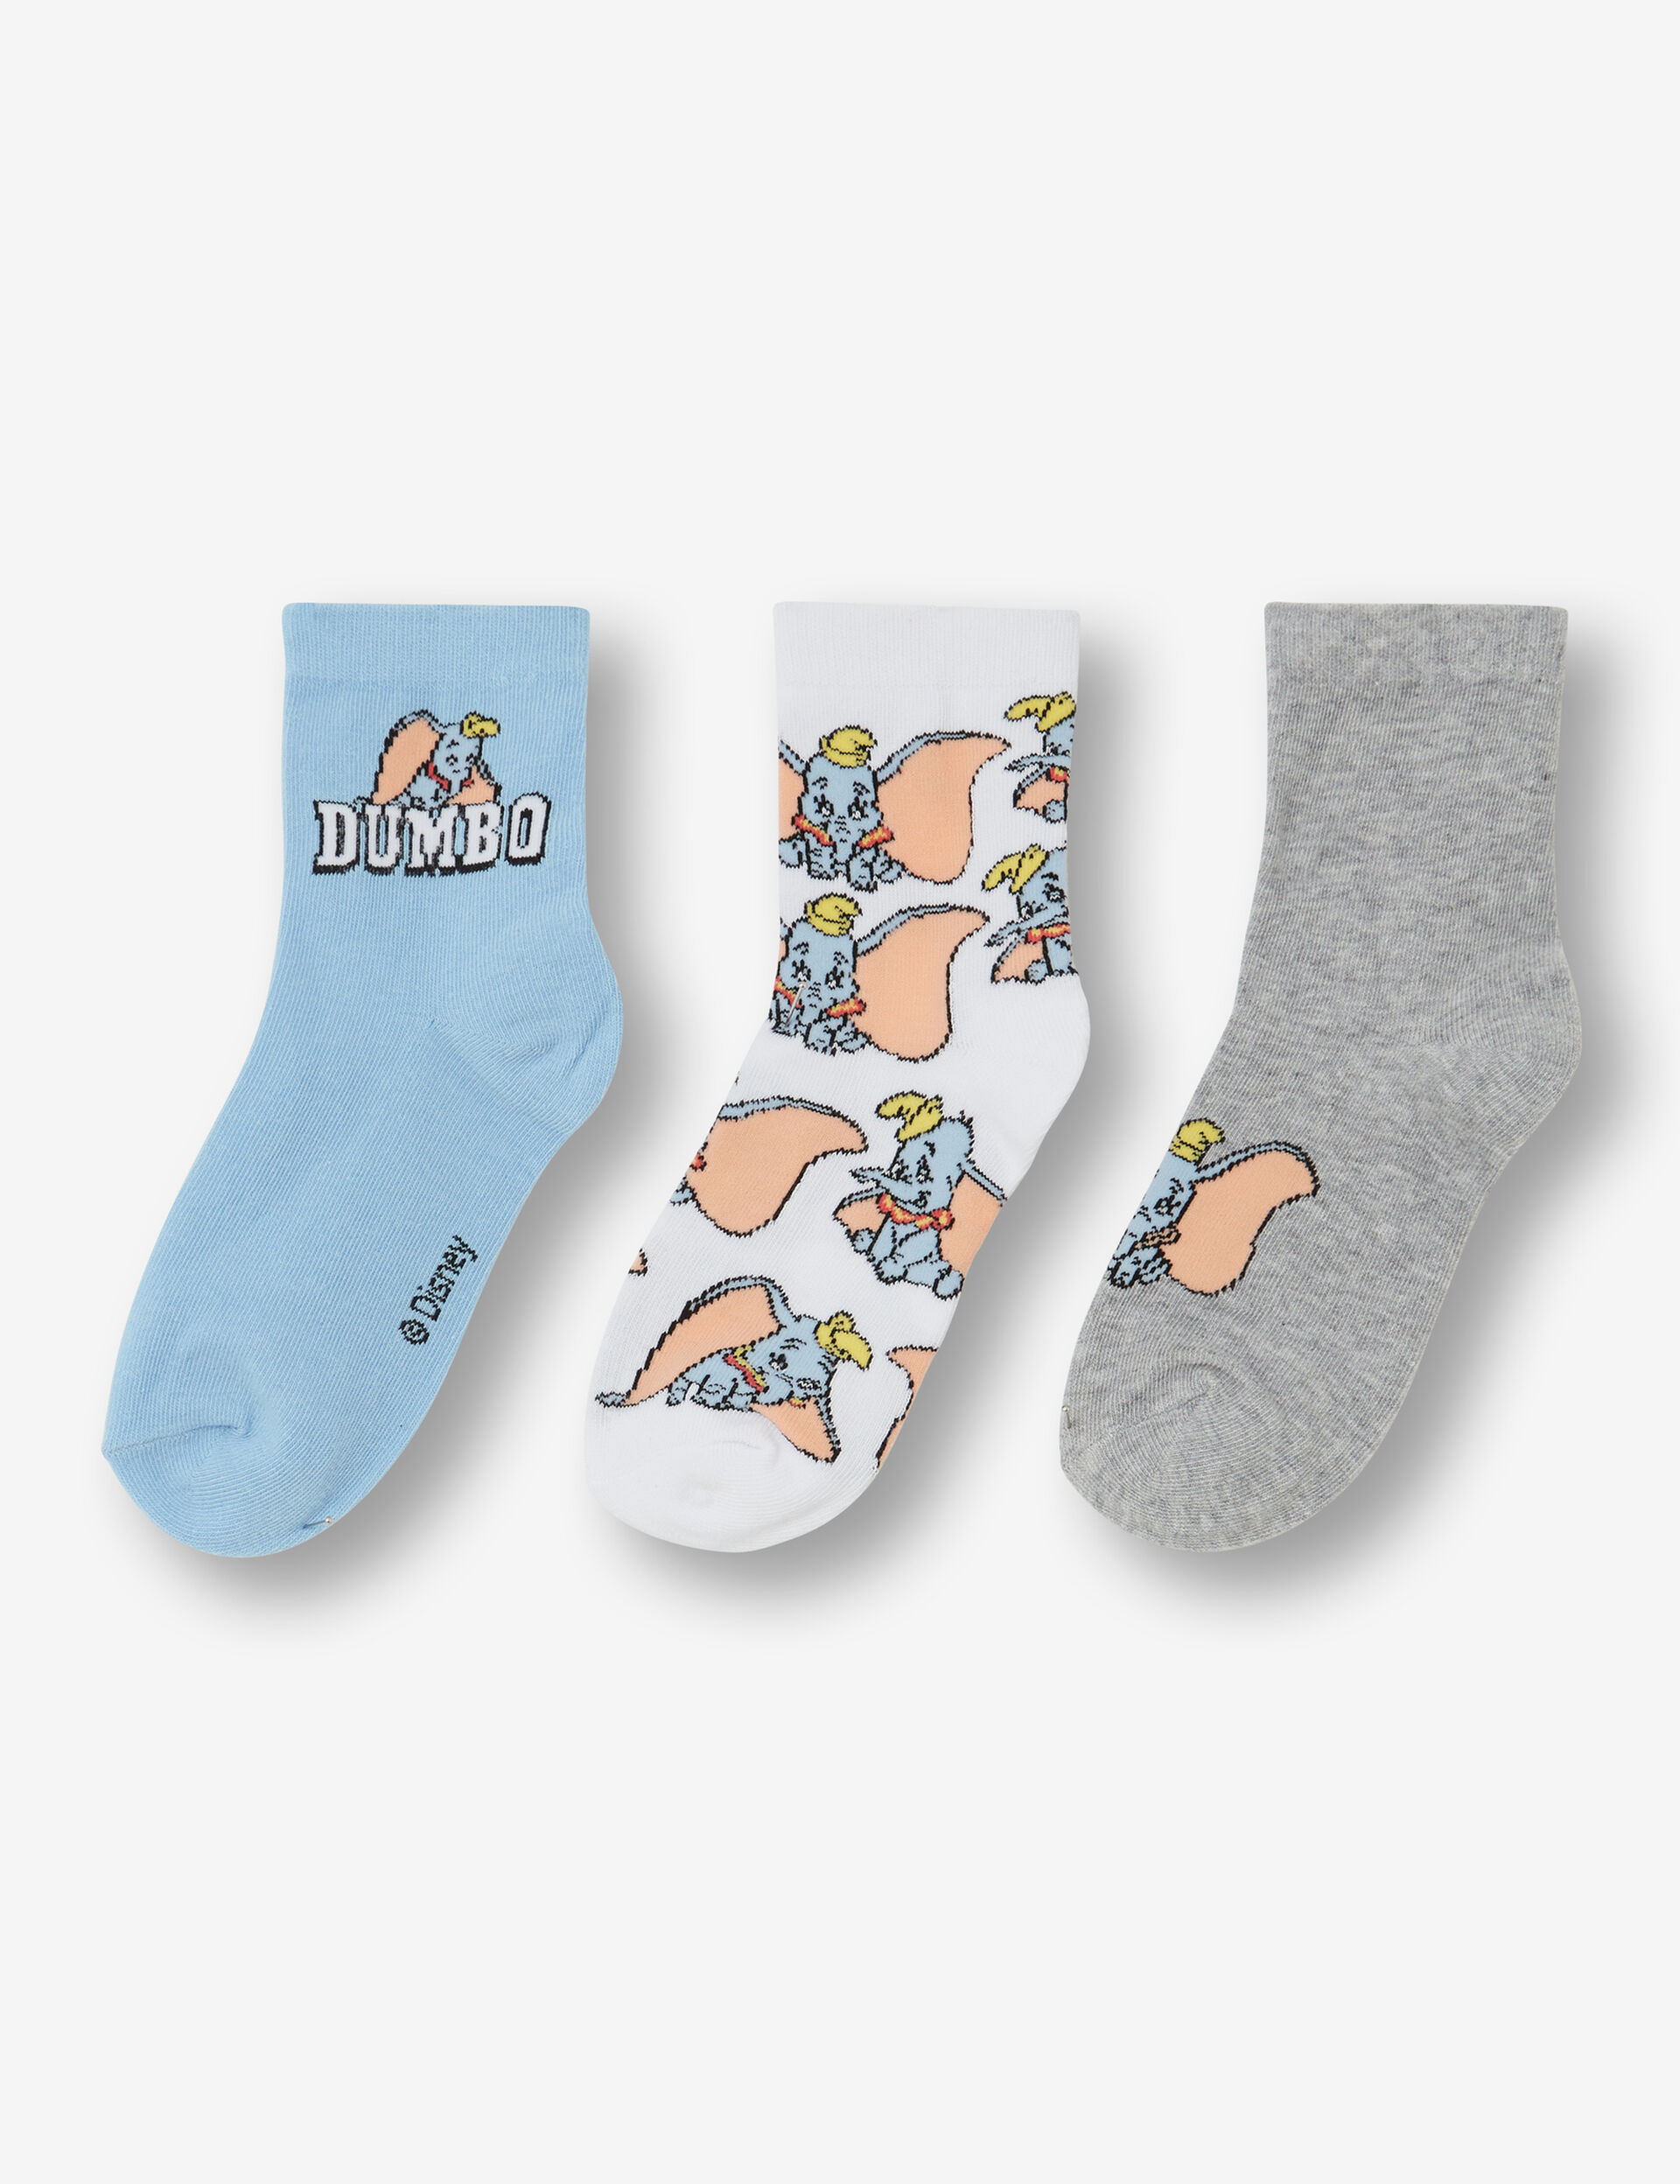 Dumbo ankle socks